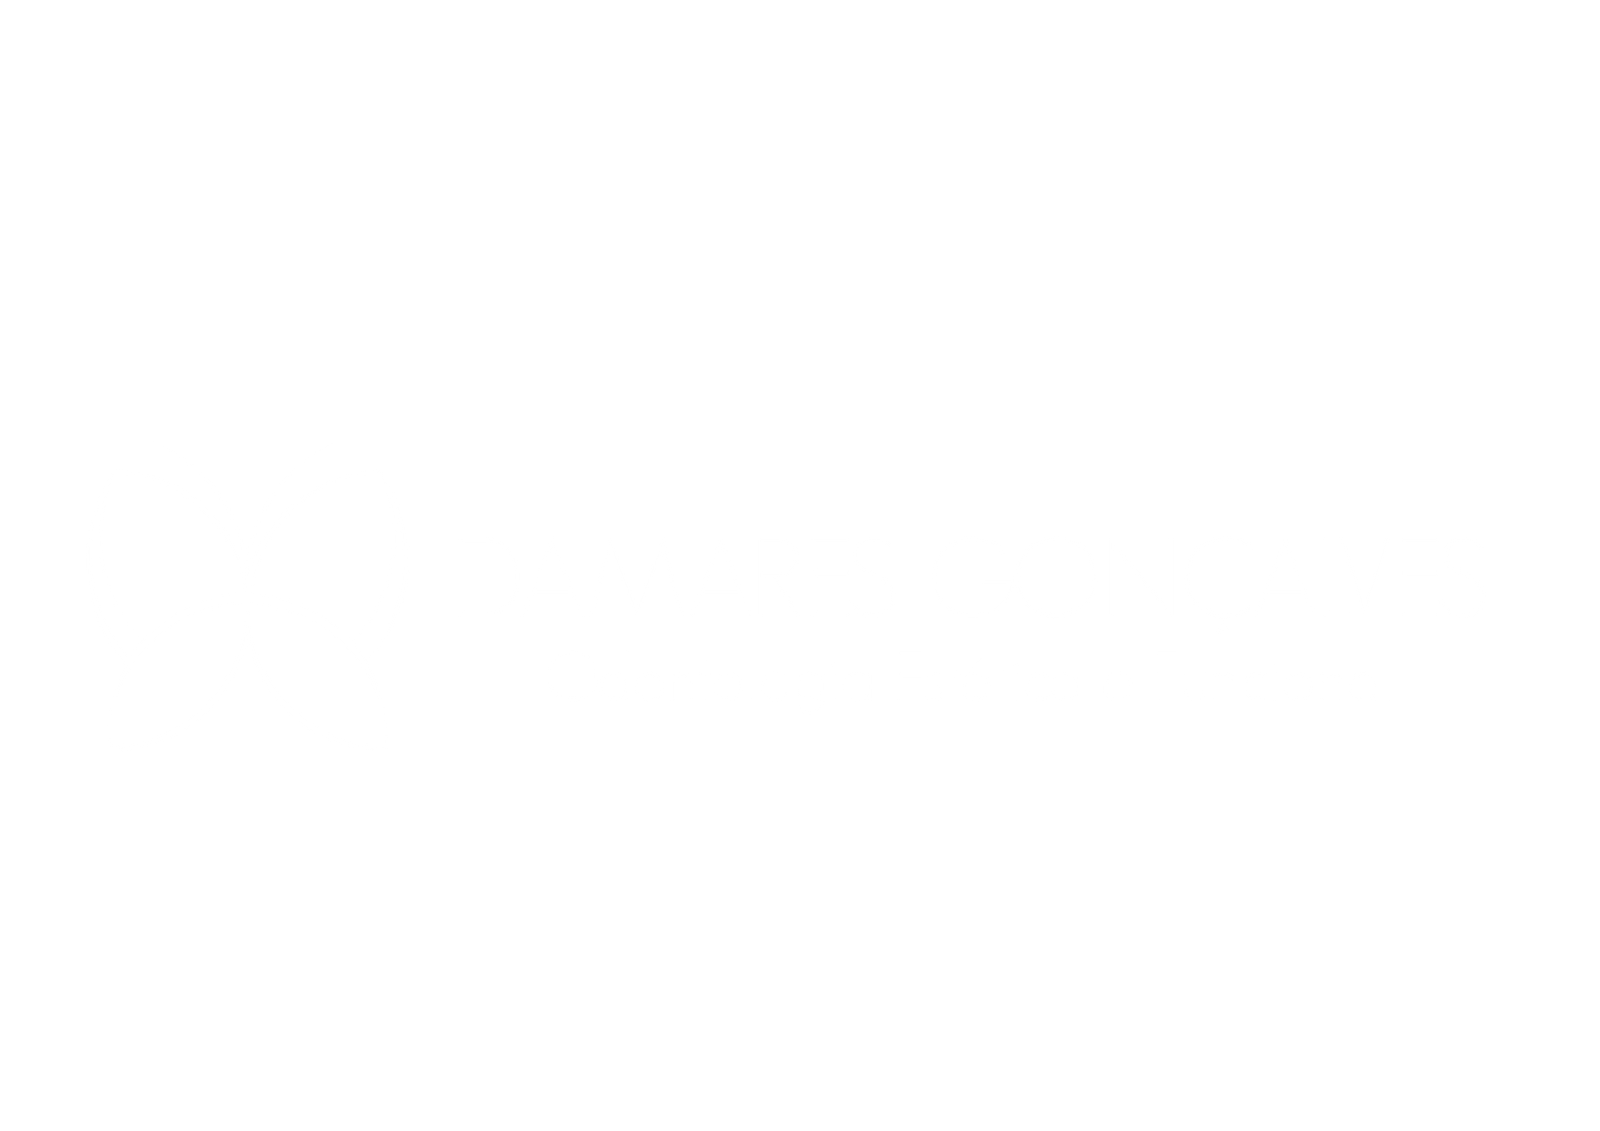 Damares Gonçalves